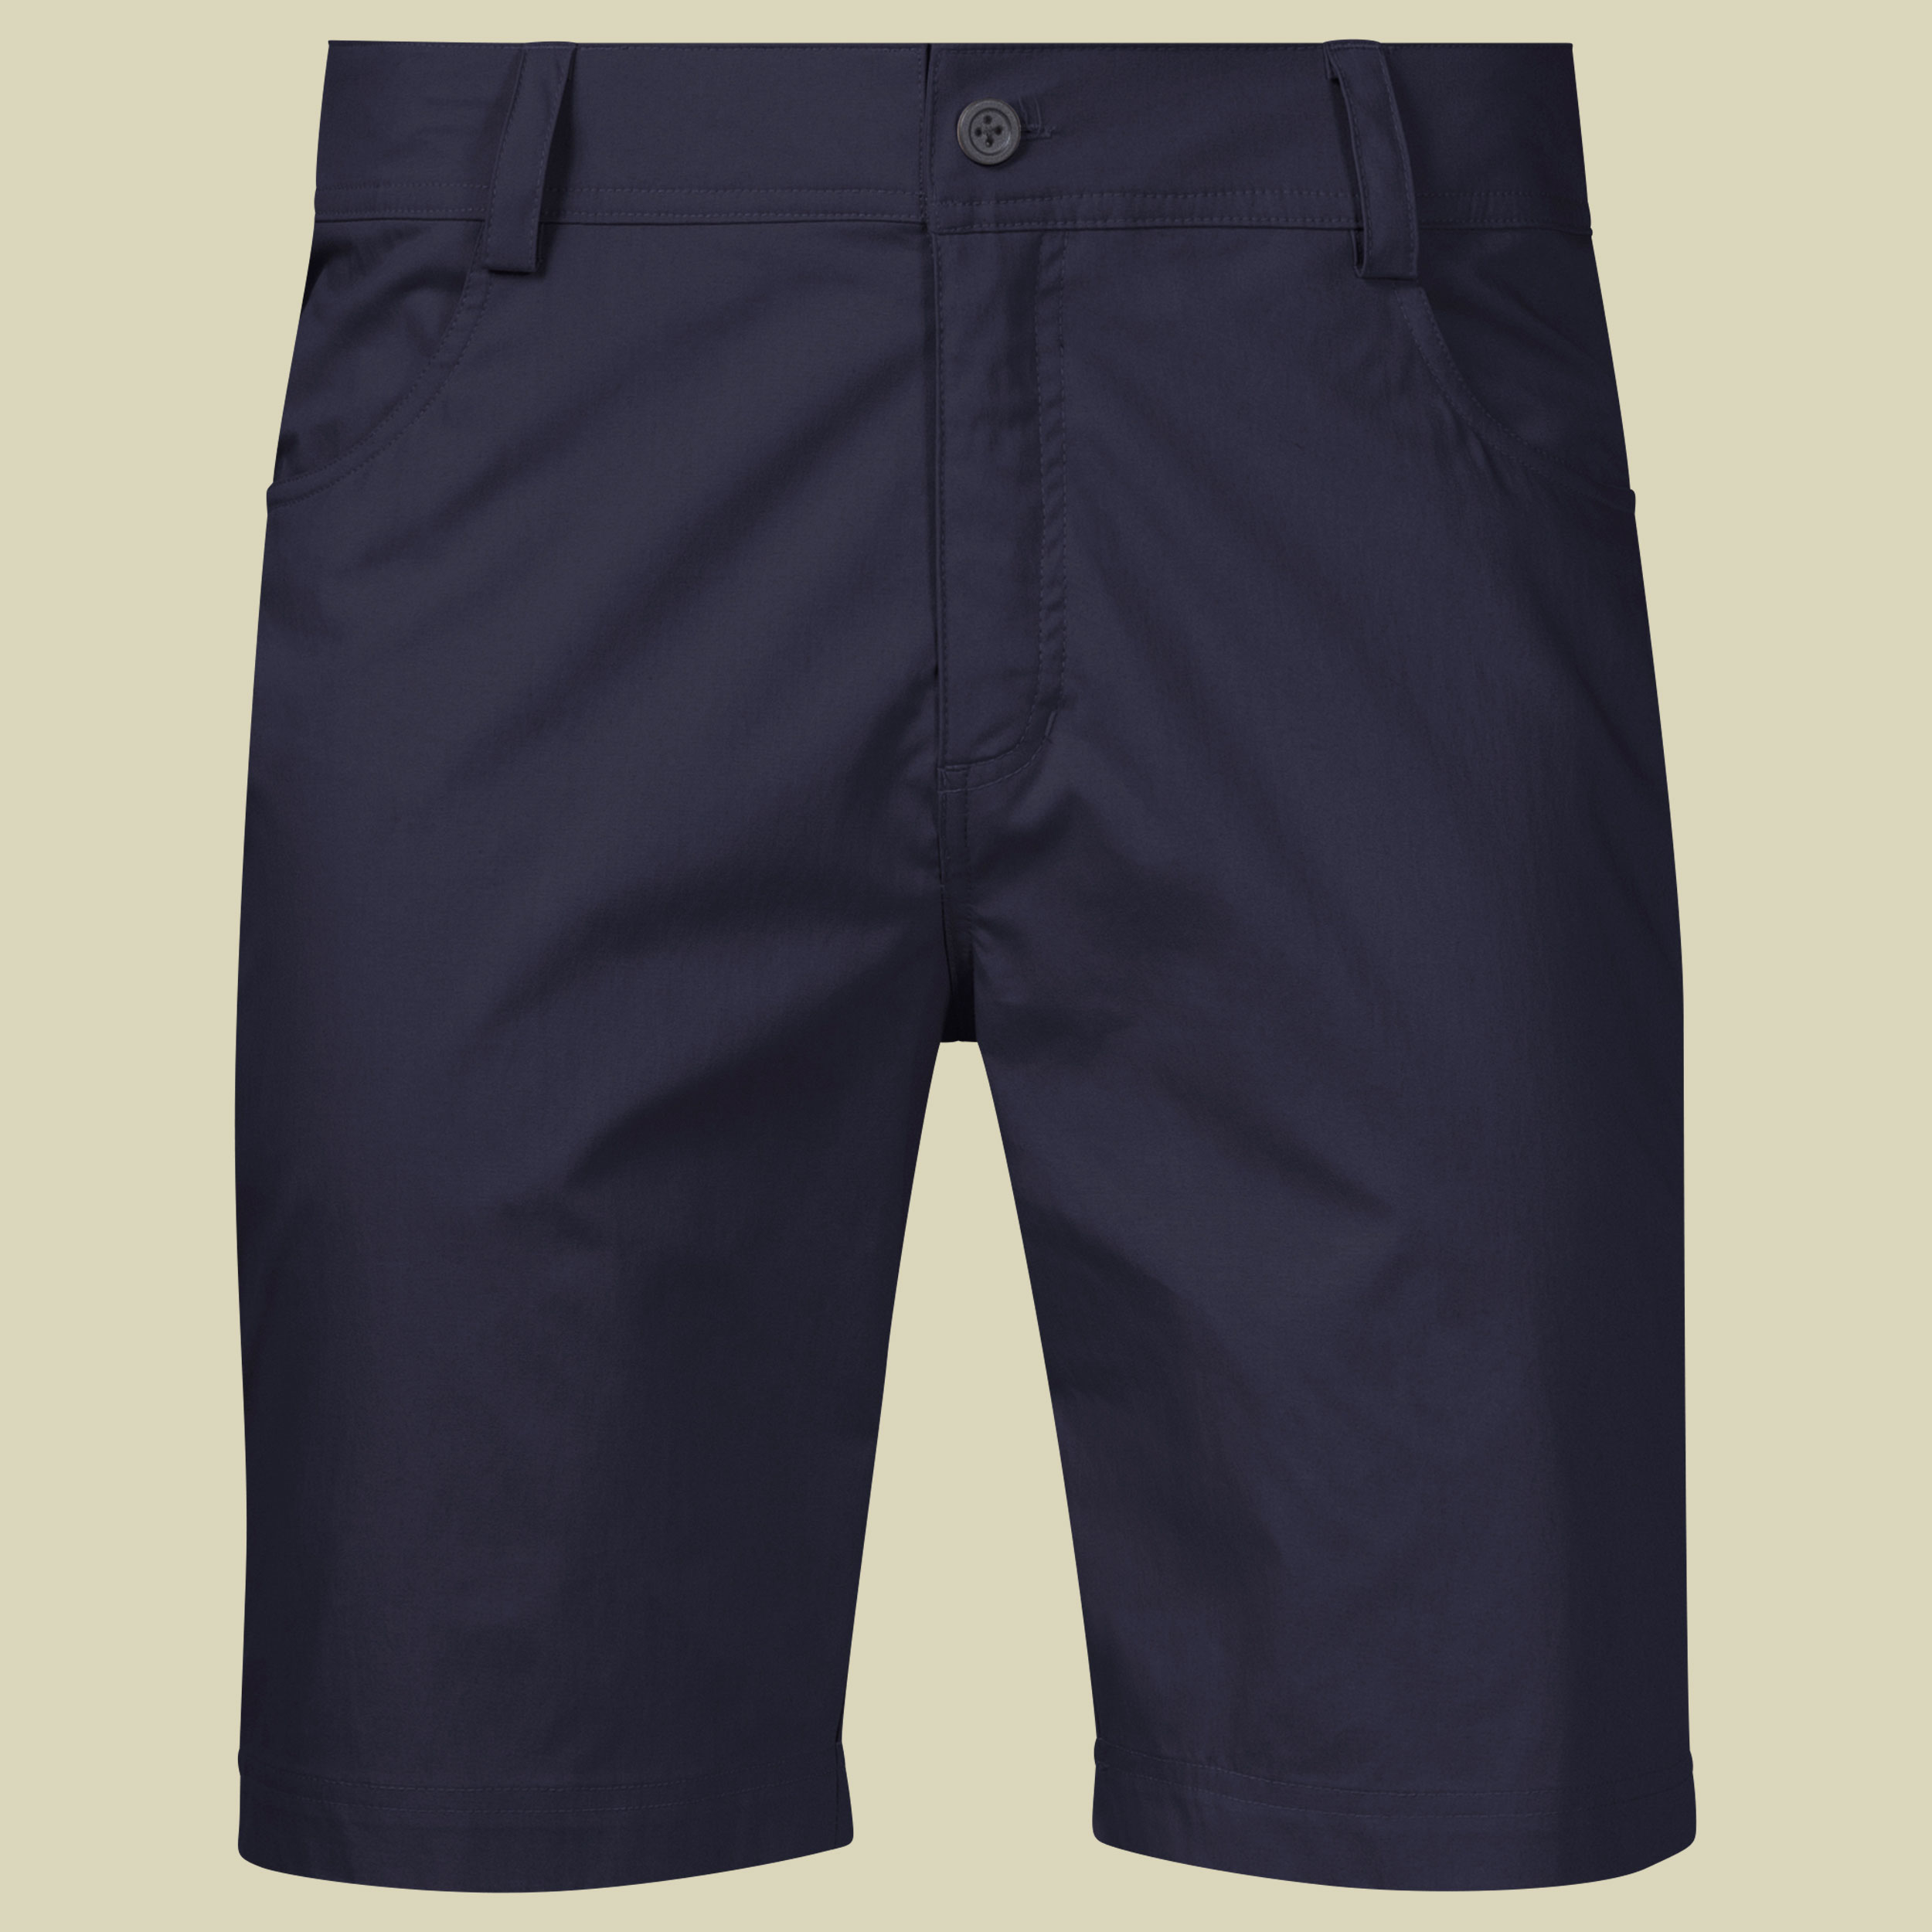 Oslo Shorts Men Größe L Farbe dark navy